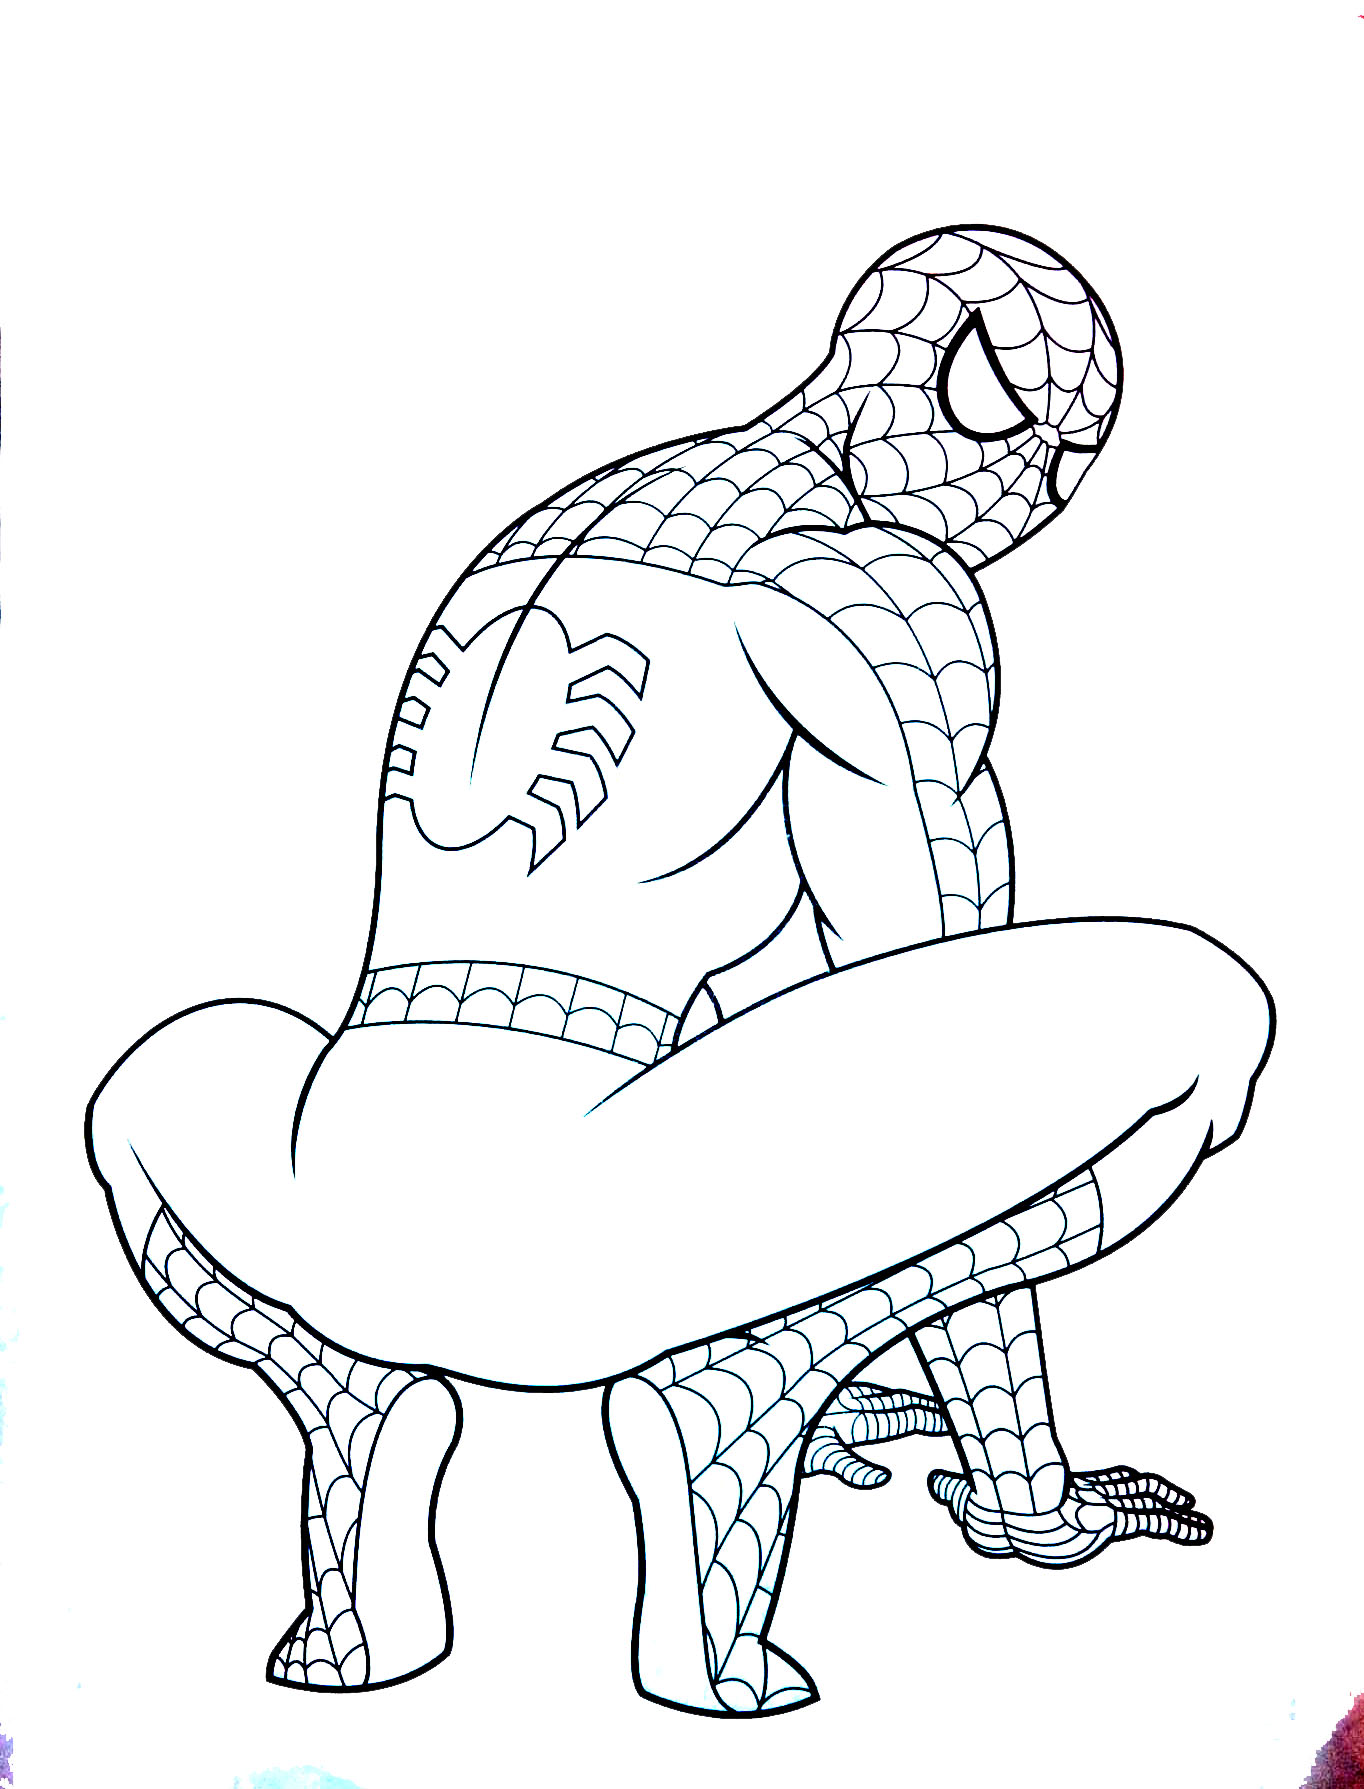 Image de Spiderman à colorier, facile pour enfants